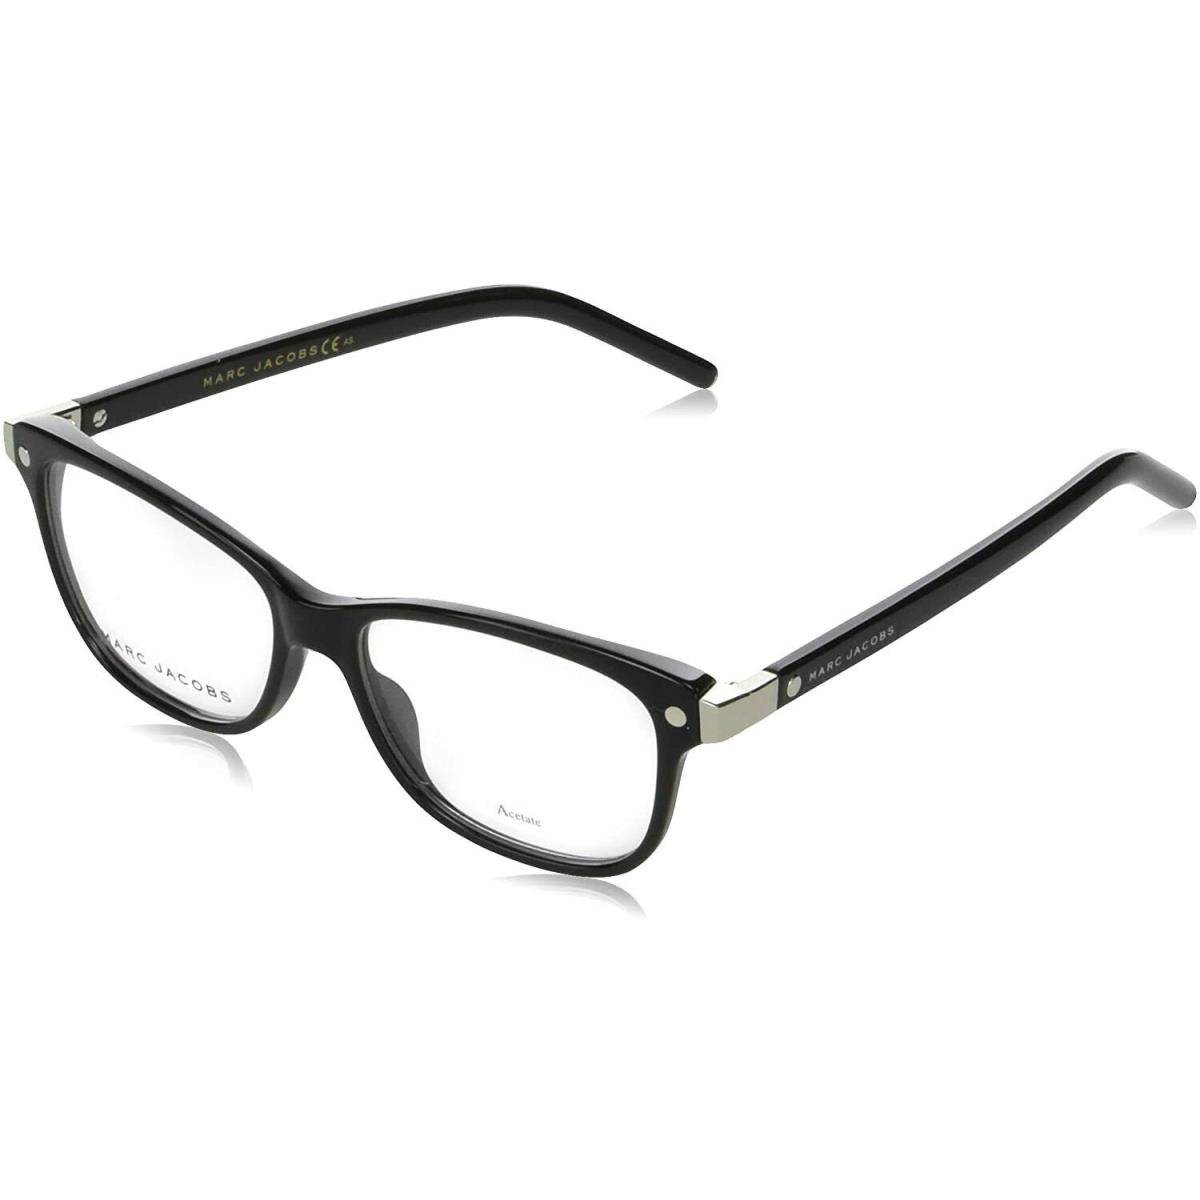 Marc Jacobs Designer Eyeglasses Frame Black Marc 72 0807 52 - Black Frame